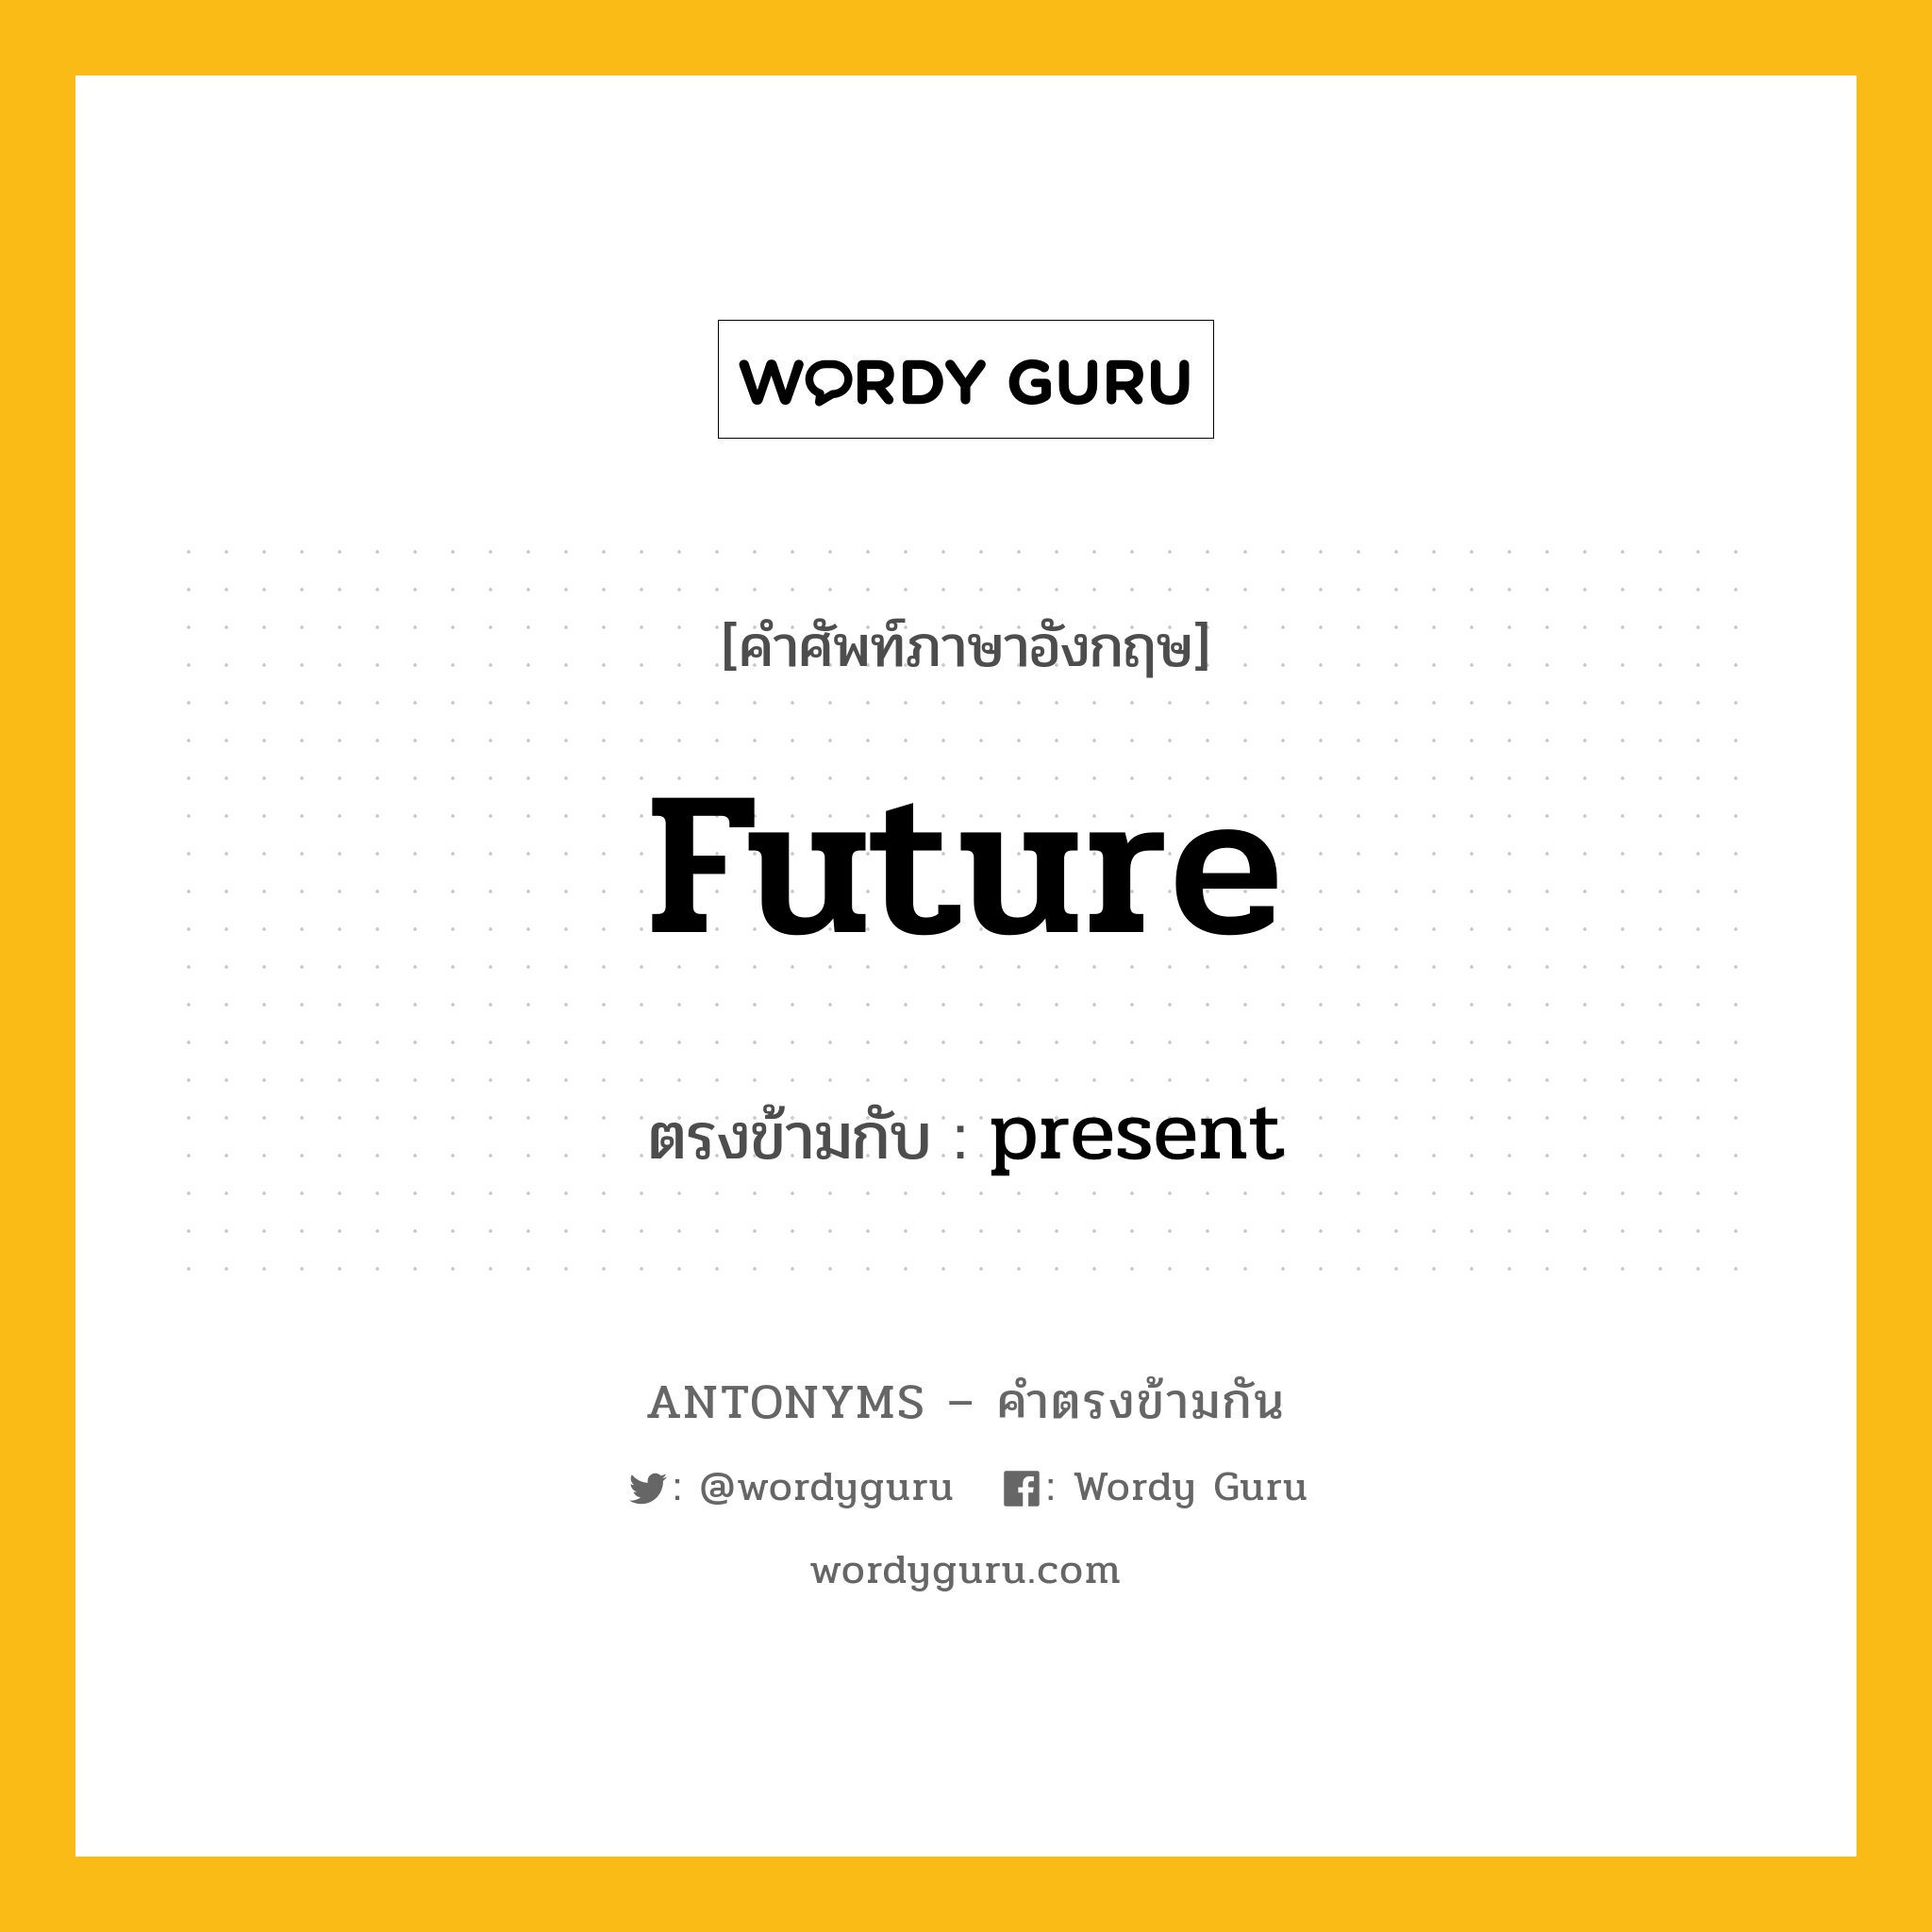 future เป็นคำตรงข้ามกับคำไหนบ้าง?, คำศัพท์ภาษาอังกฤษ future ตรงข้ามกับ present หมวด present